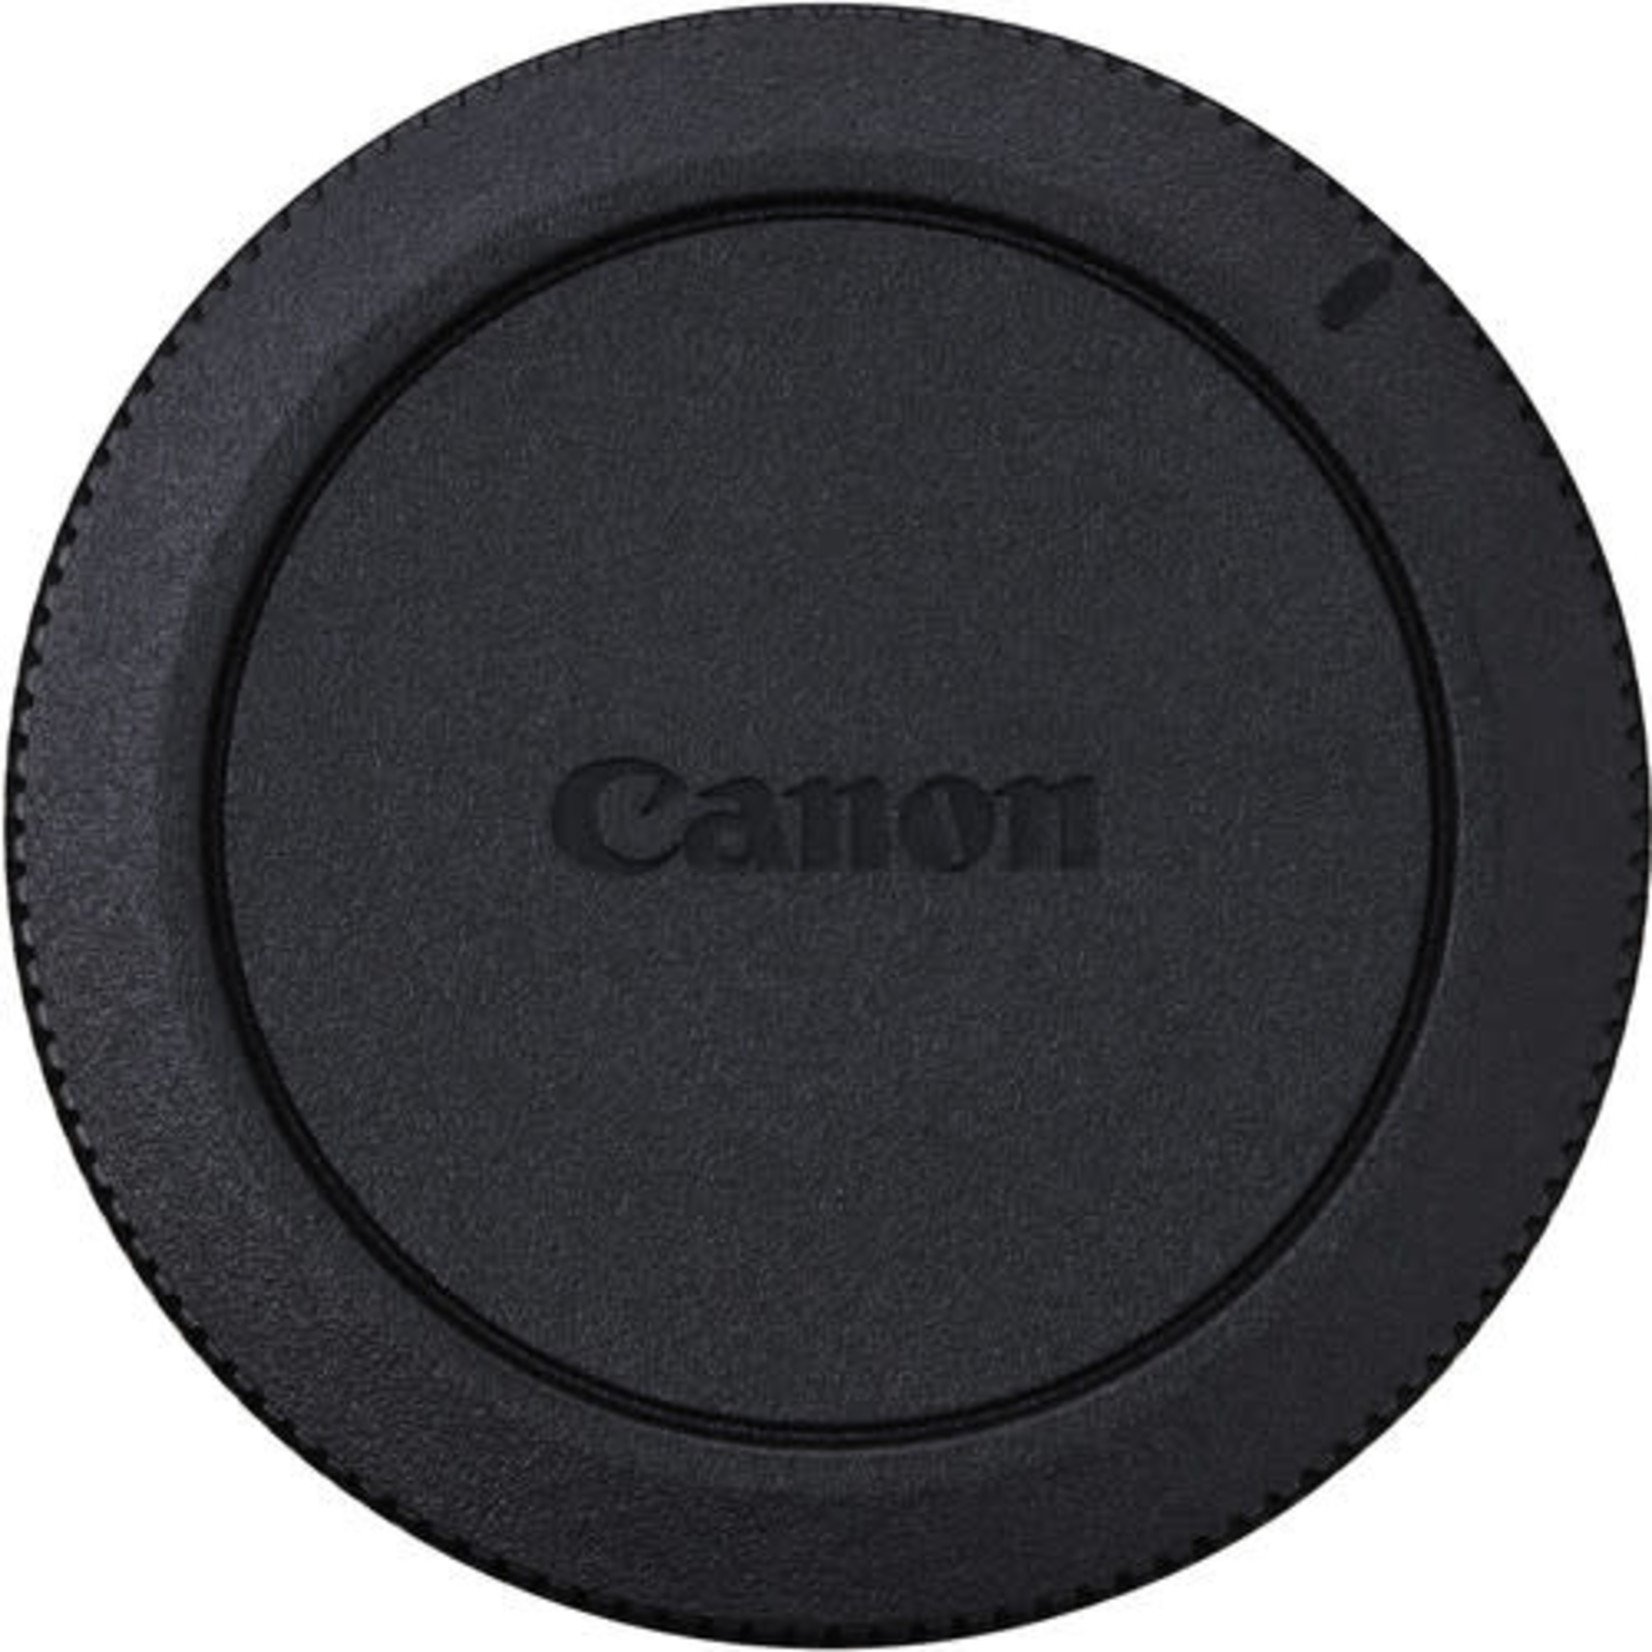 Canon Canon R-F-5 Camera Cover